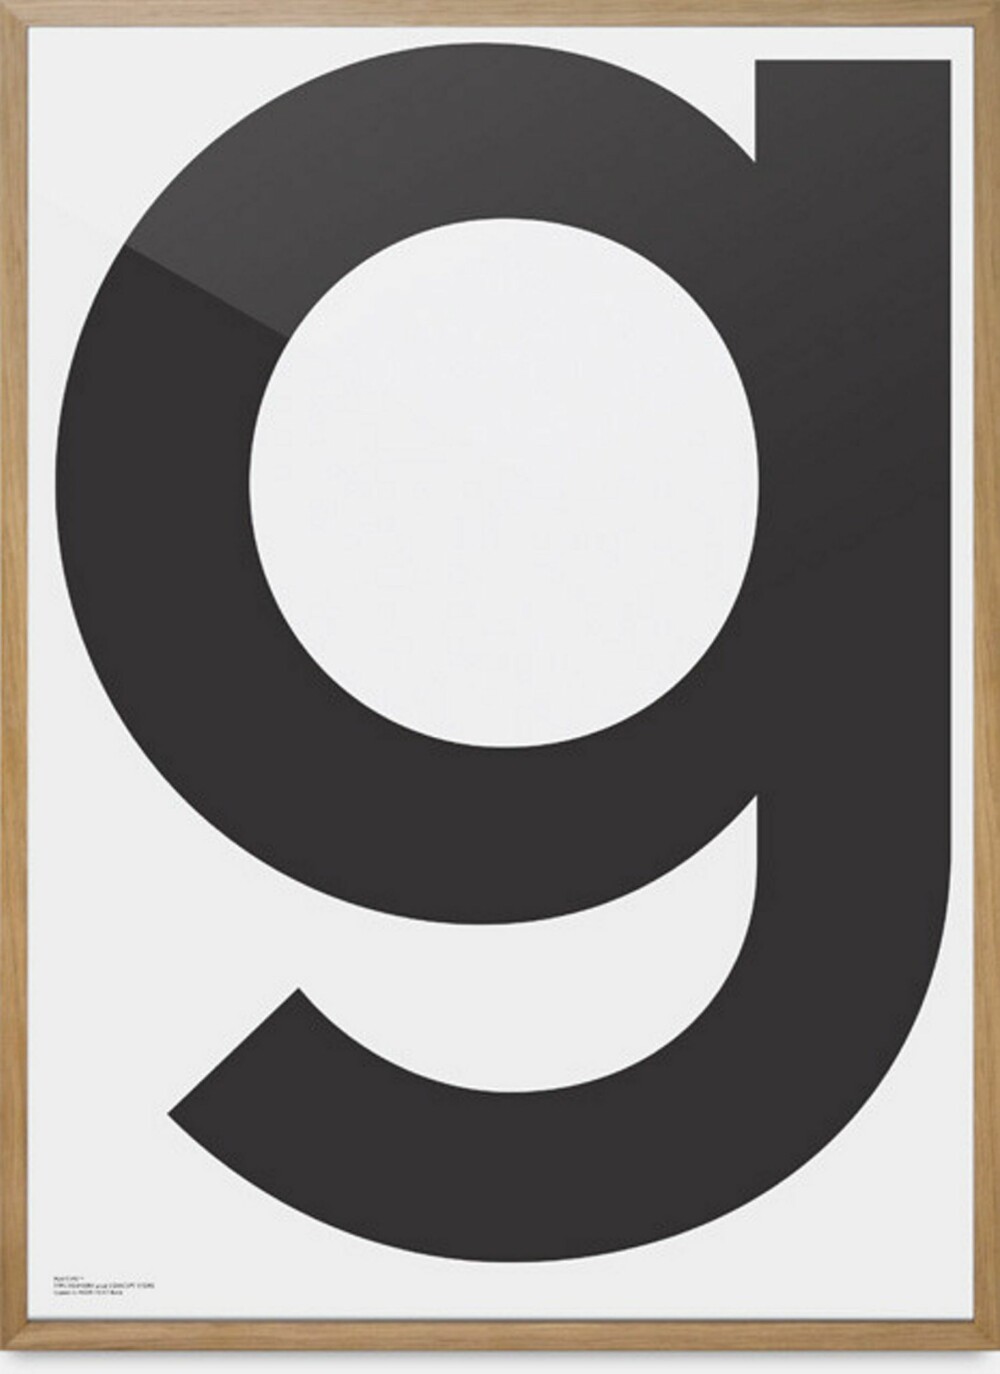 BLOGGERNES FAVORITT: Den enkle plakaten ""G"" fra Playtype, henger i mange bloggerhjem for øyeblikket.